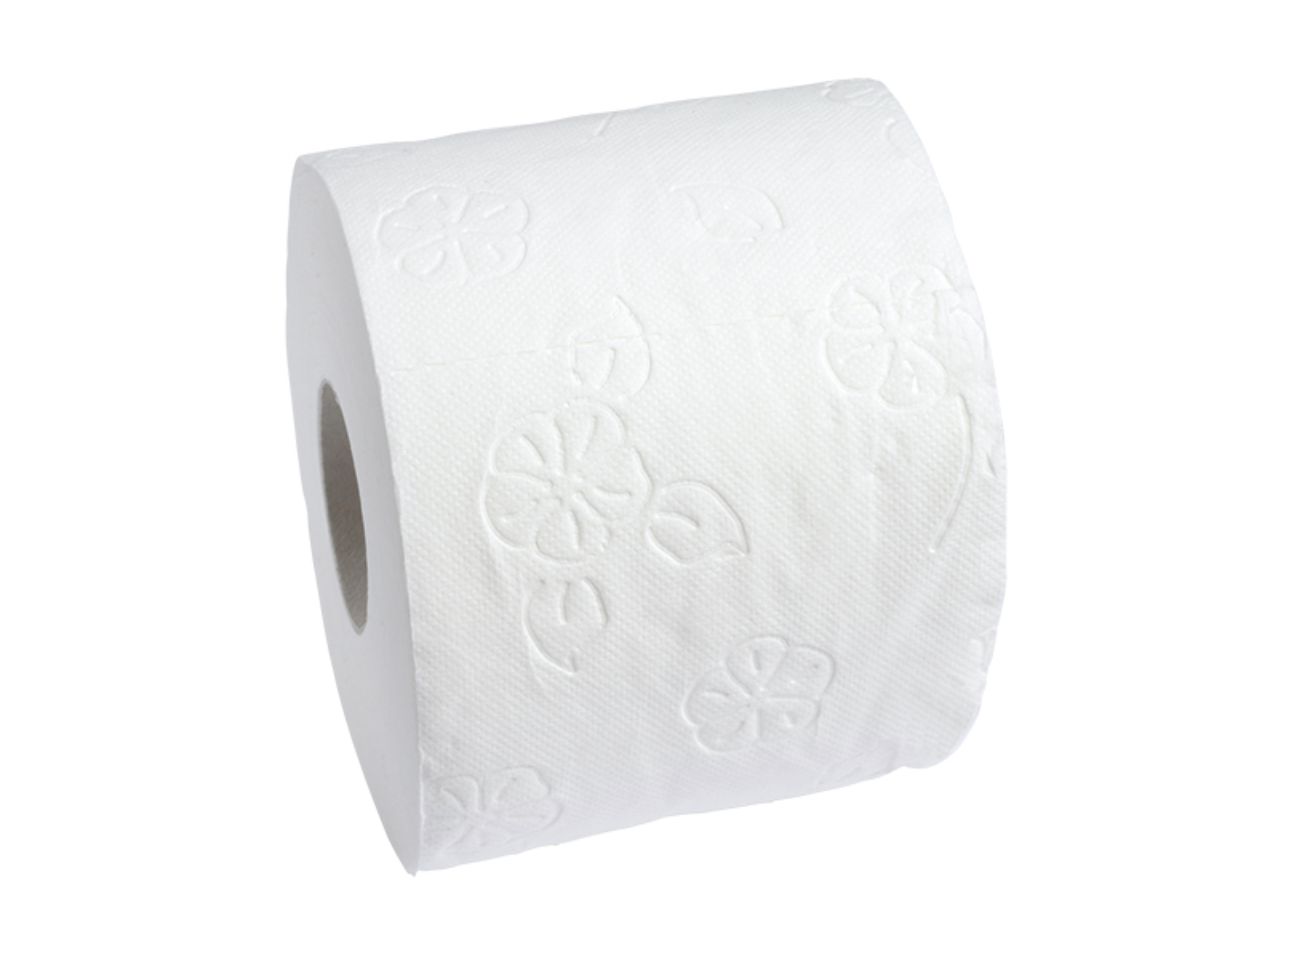 Toilettenpapier FSC Zertifiziert 150 Blatt 4 lagig, 8 Rollen je Pack